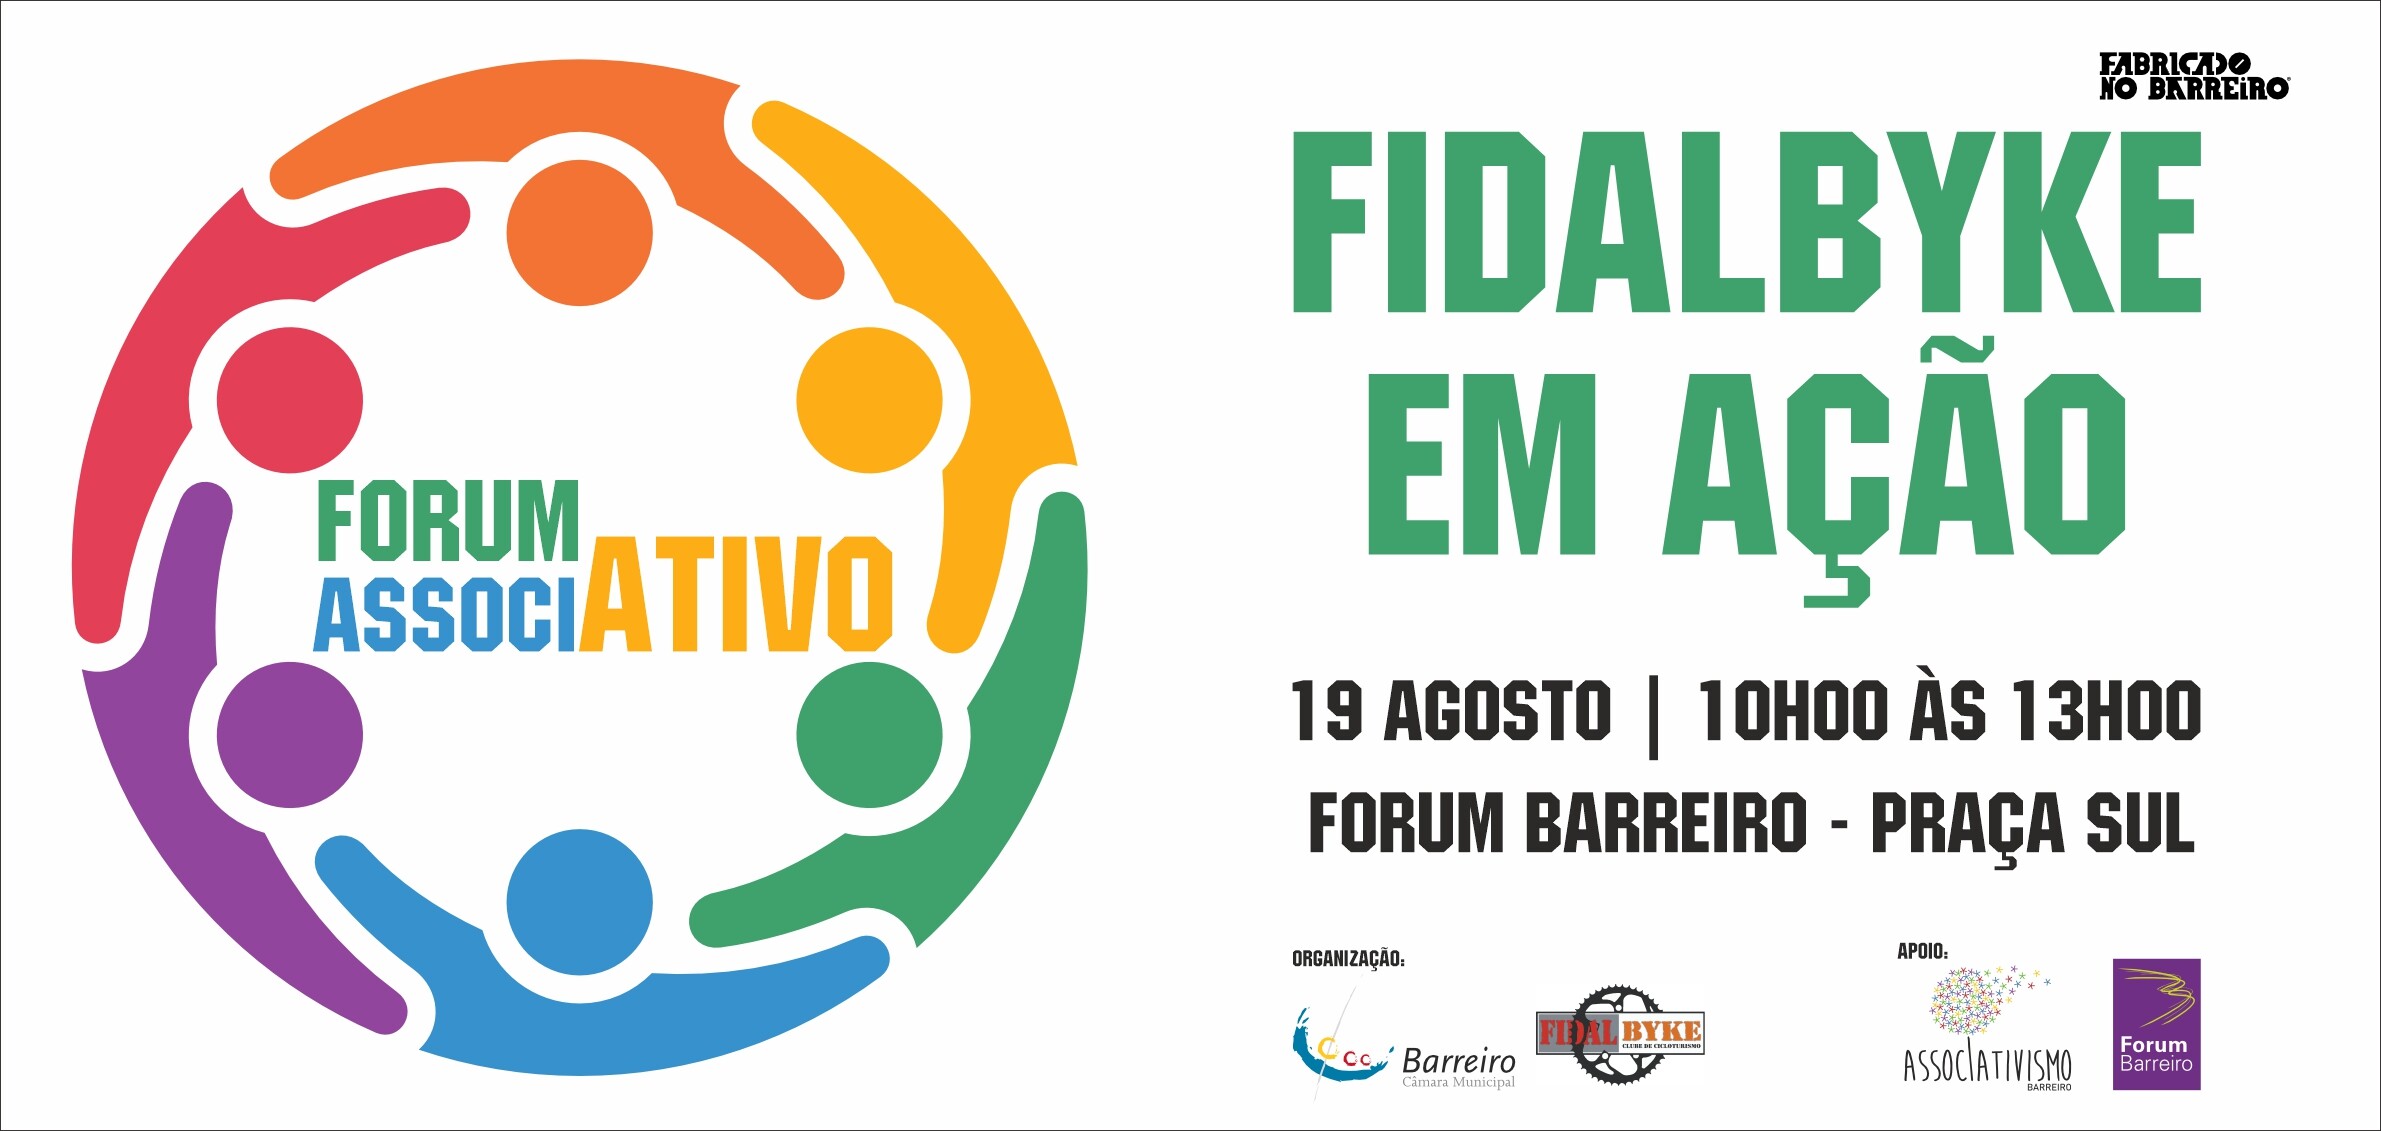 Forum AssociAtivo | Fidalbyke em ação